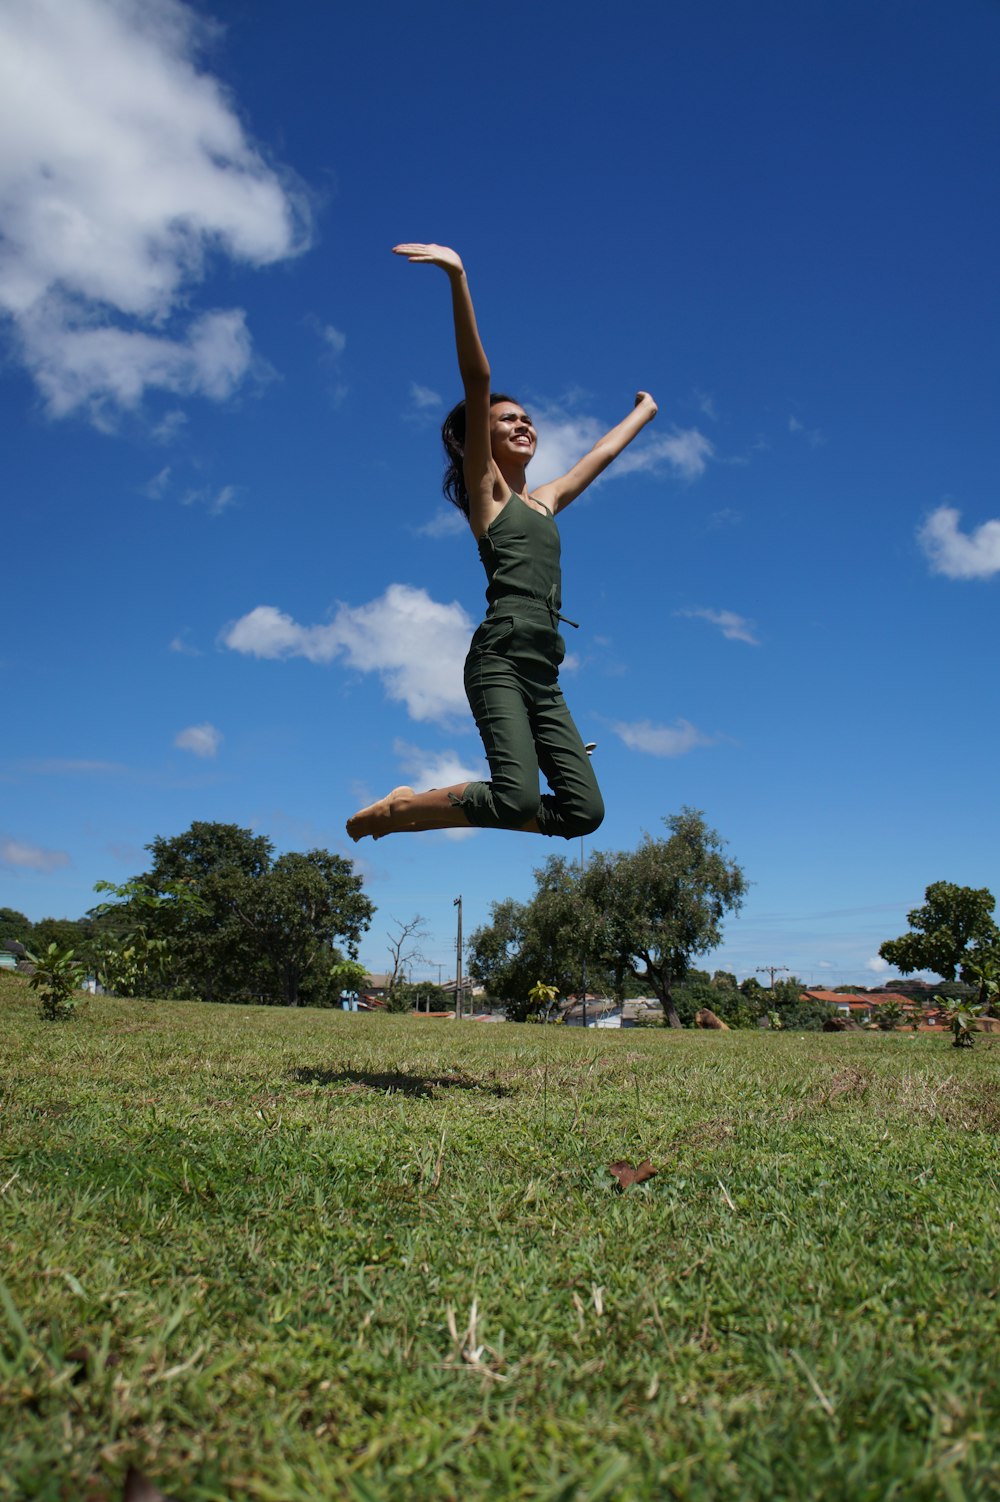 una mujer saltando en el aire con un frisbee